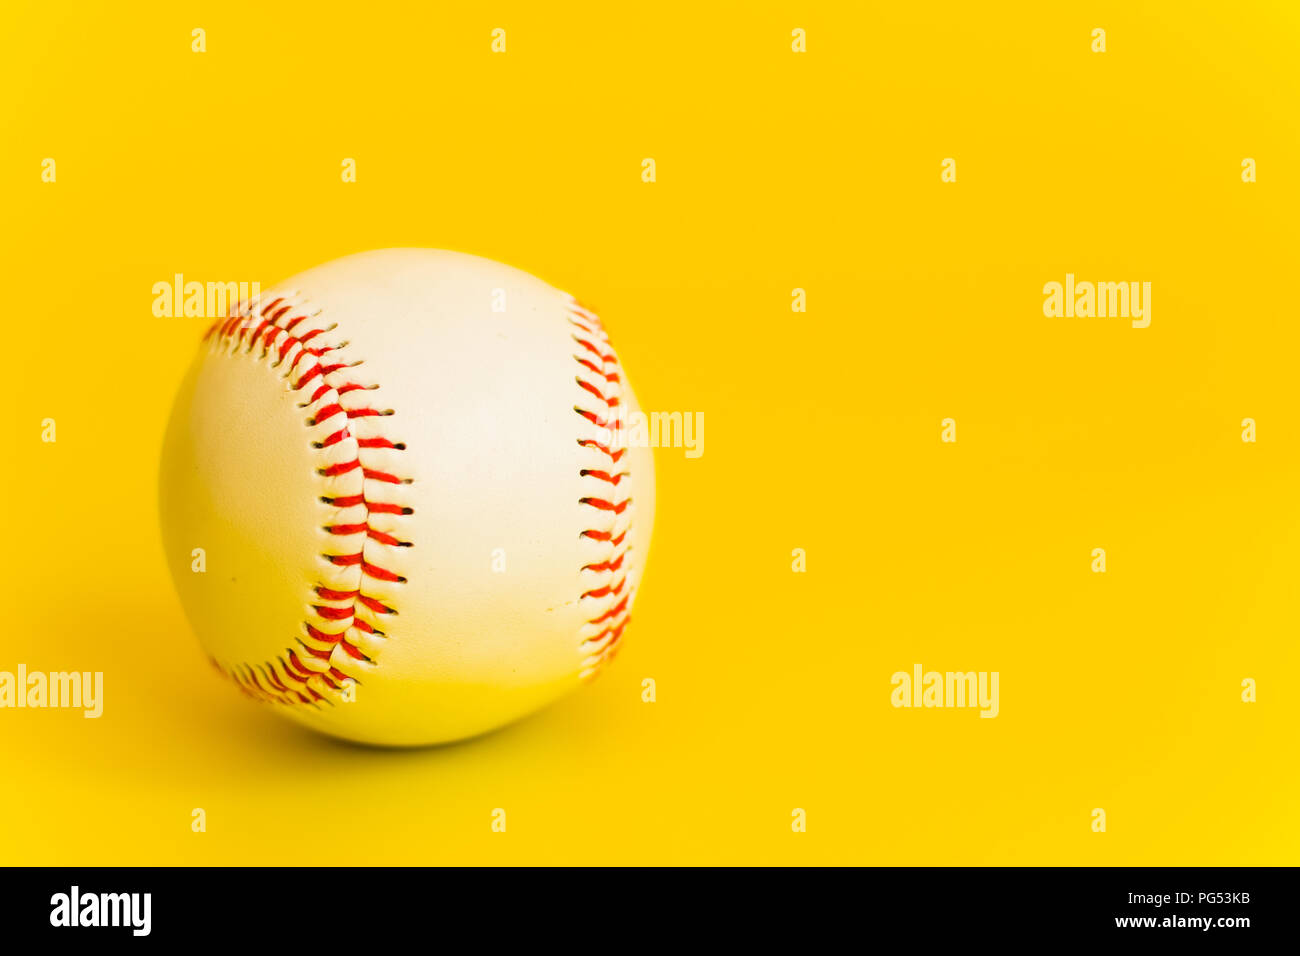 Estándar blanco bola de béisbol con la costura hilo rojo Foto de stock